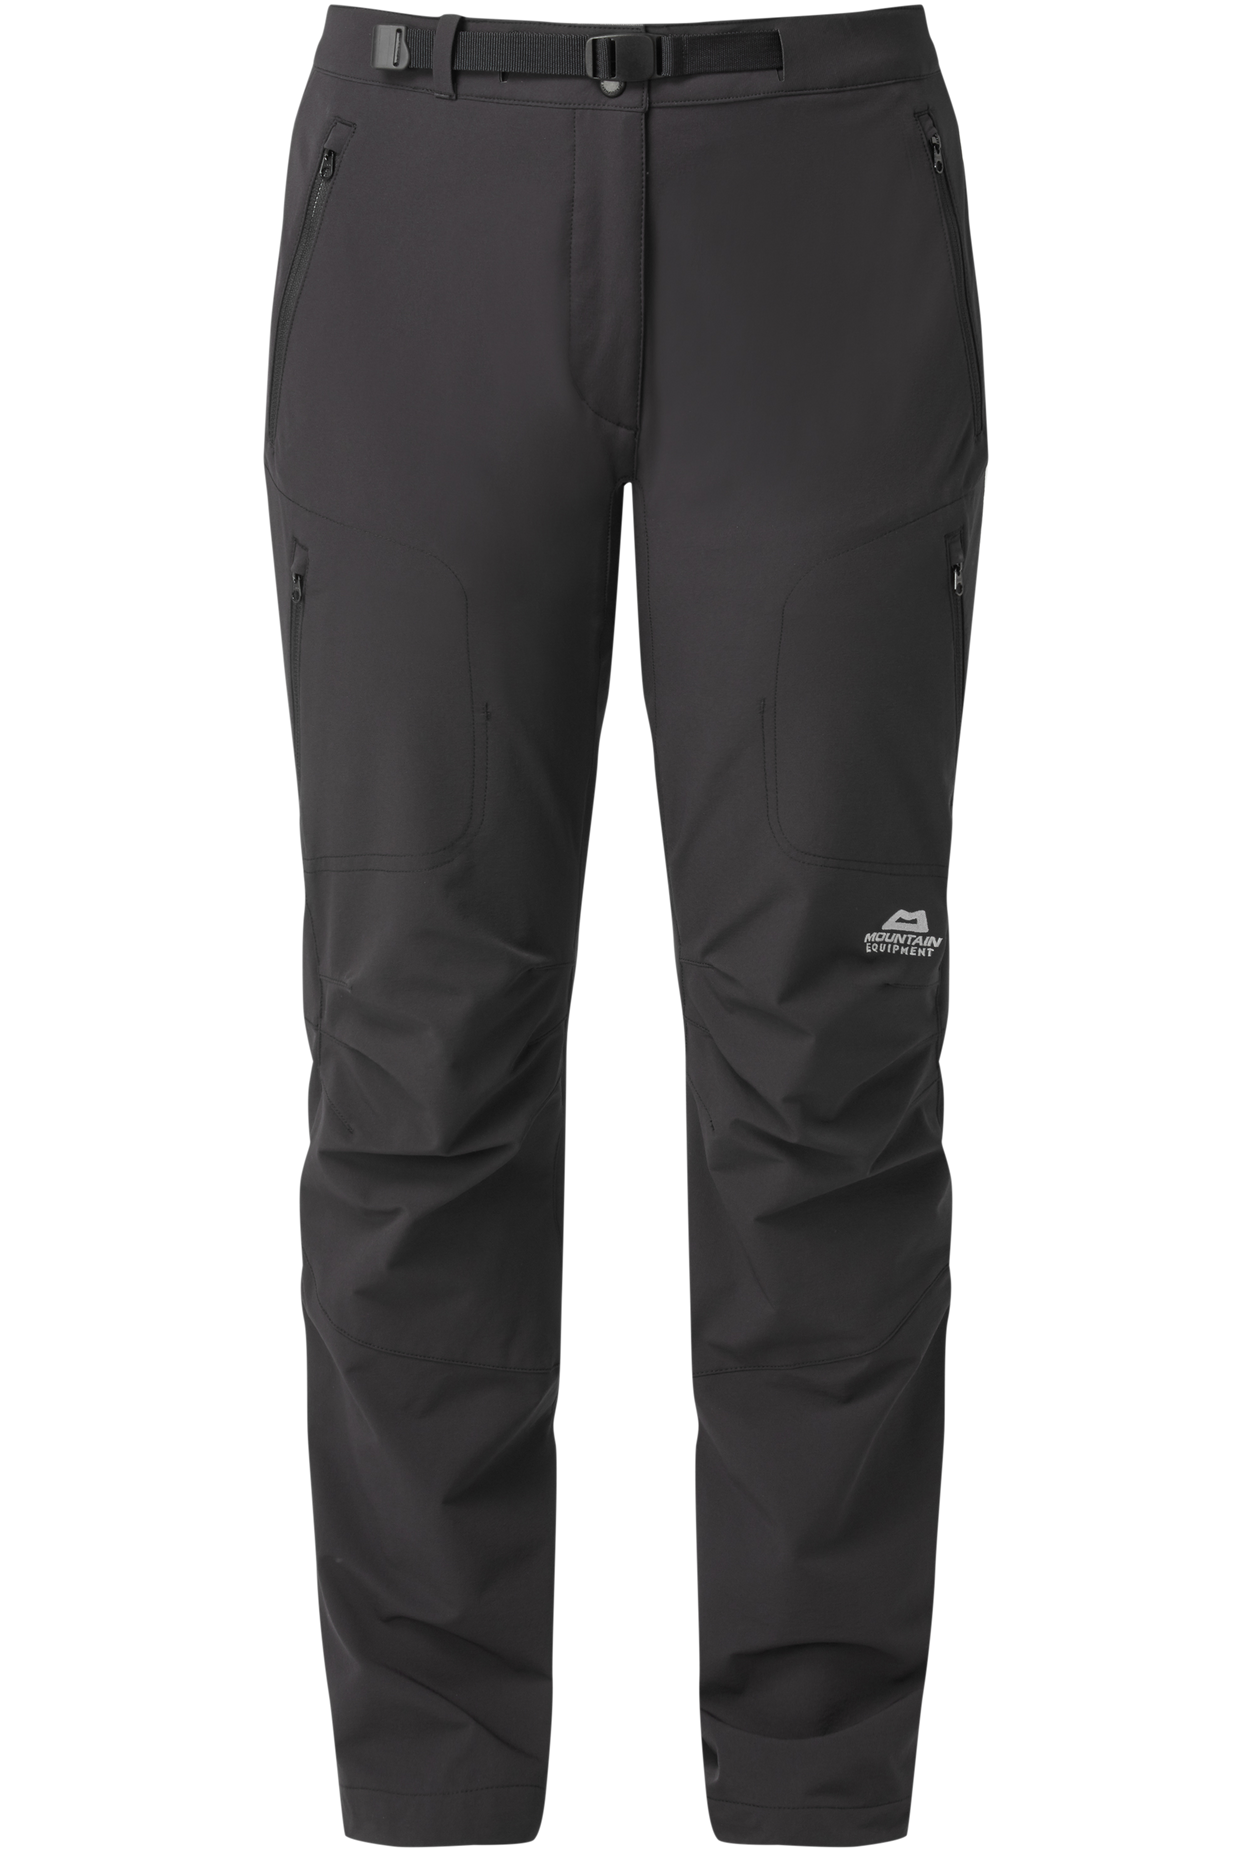 Mountain Equipment dámské softshellové kalhoty Chamois Wmns Pant - prodloužené Barva: black, Velikost: 18/XXL